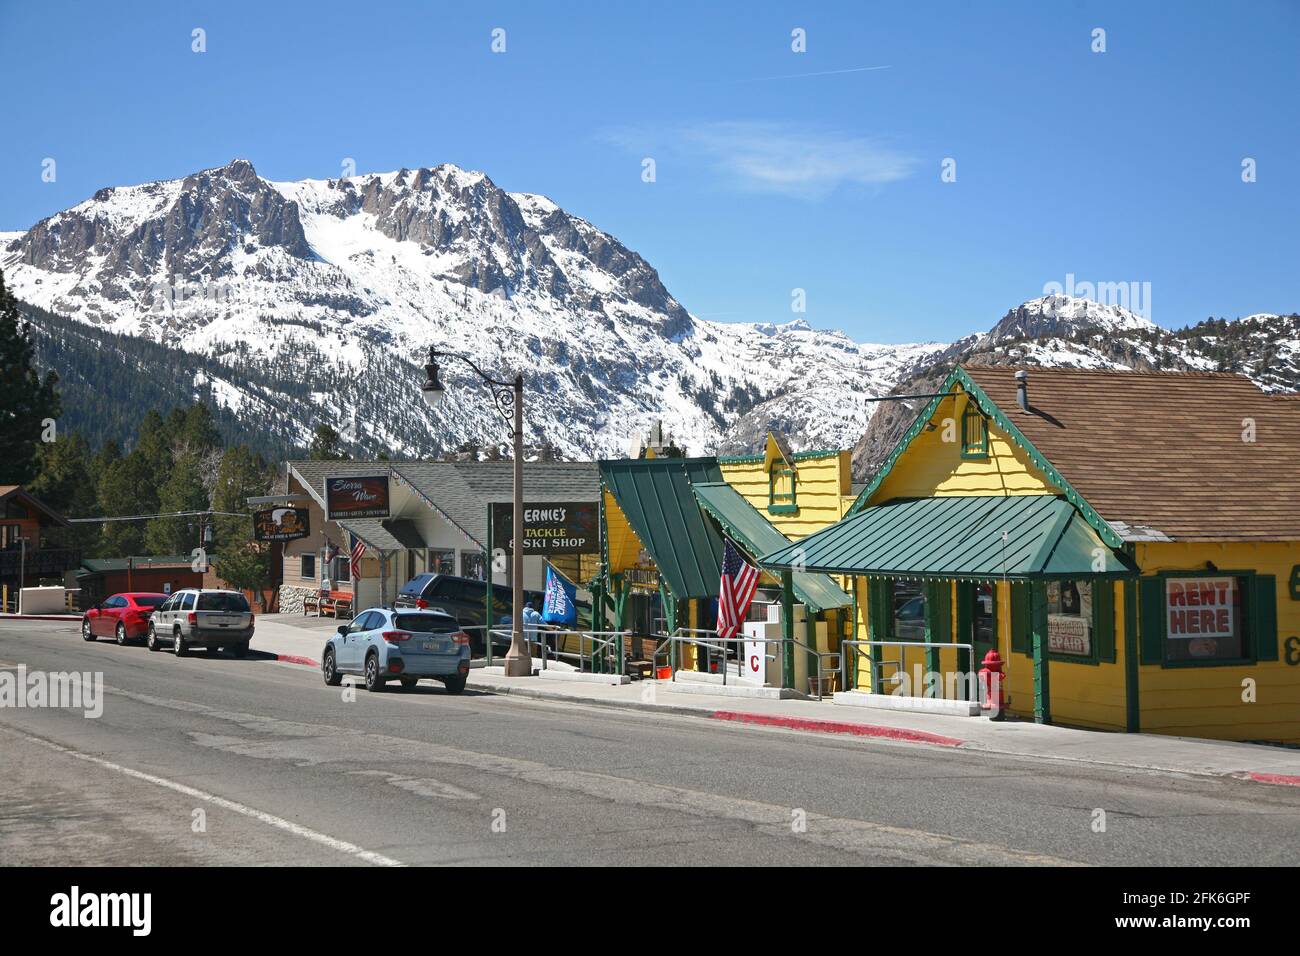 Centre-ville June Lake village dans les montagnes de l'est de la Sierra Nevada Californie Banque D'Images